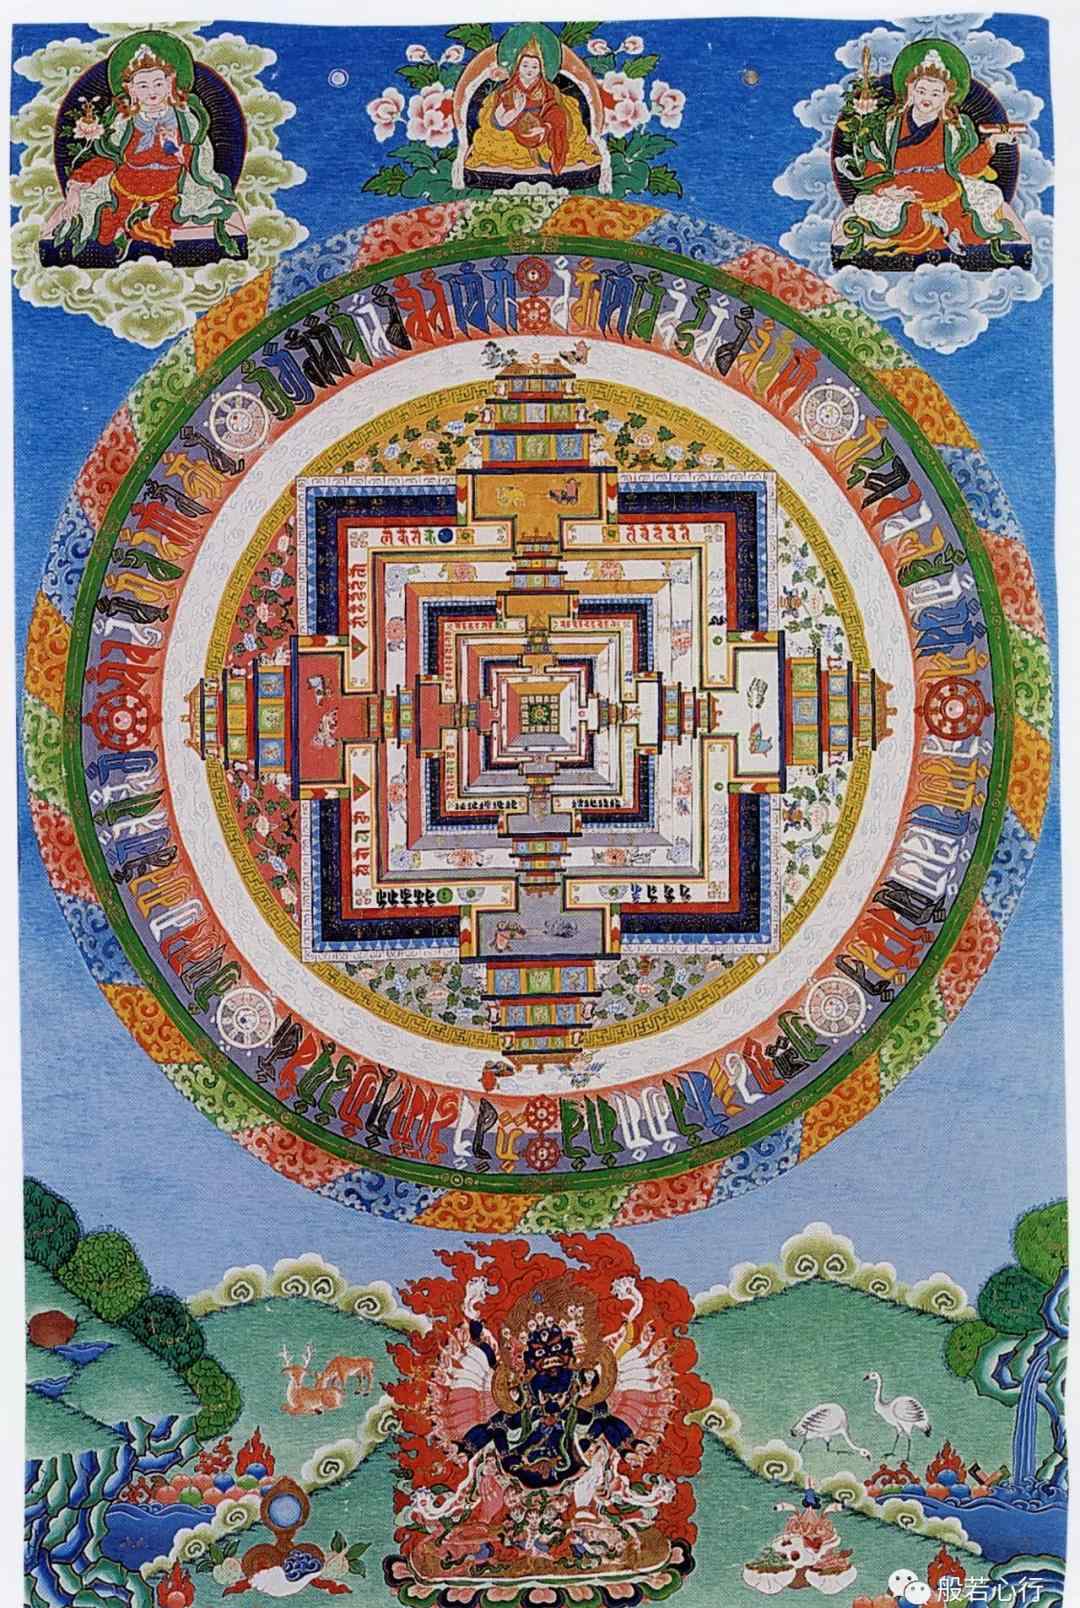 时轮金刚 时轮金刚三昧耶曼荼罗 —《极乐之轮:佛教冥想艺术》